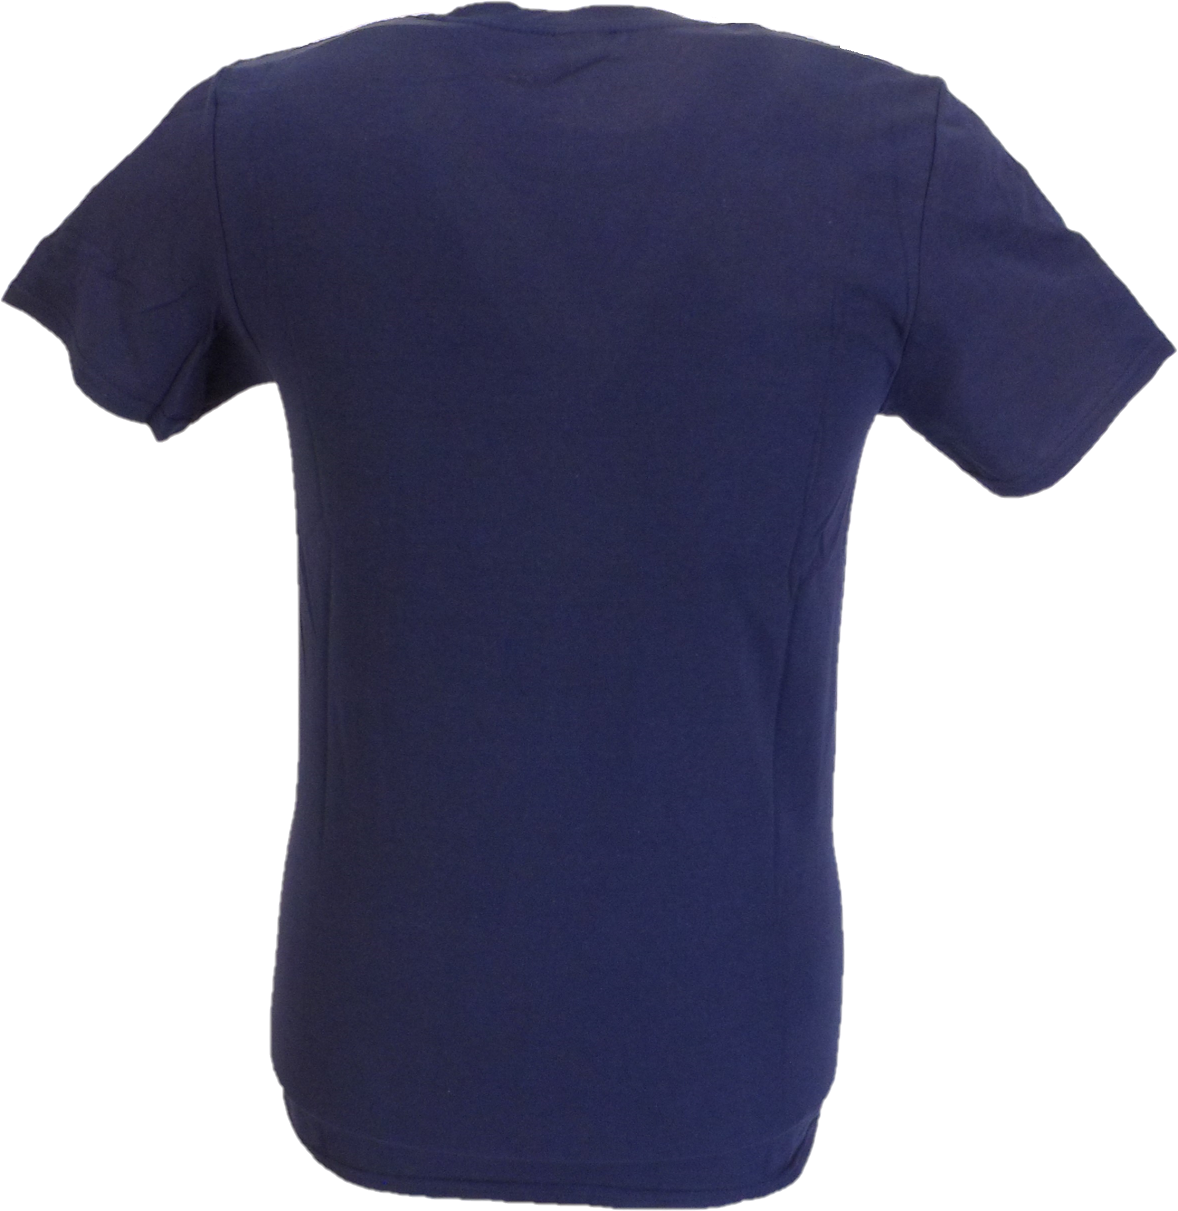 Mens Official Licensed Oasis Navy Blue Oblong Target Logo T Shirt